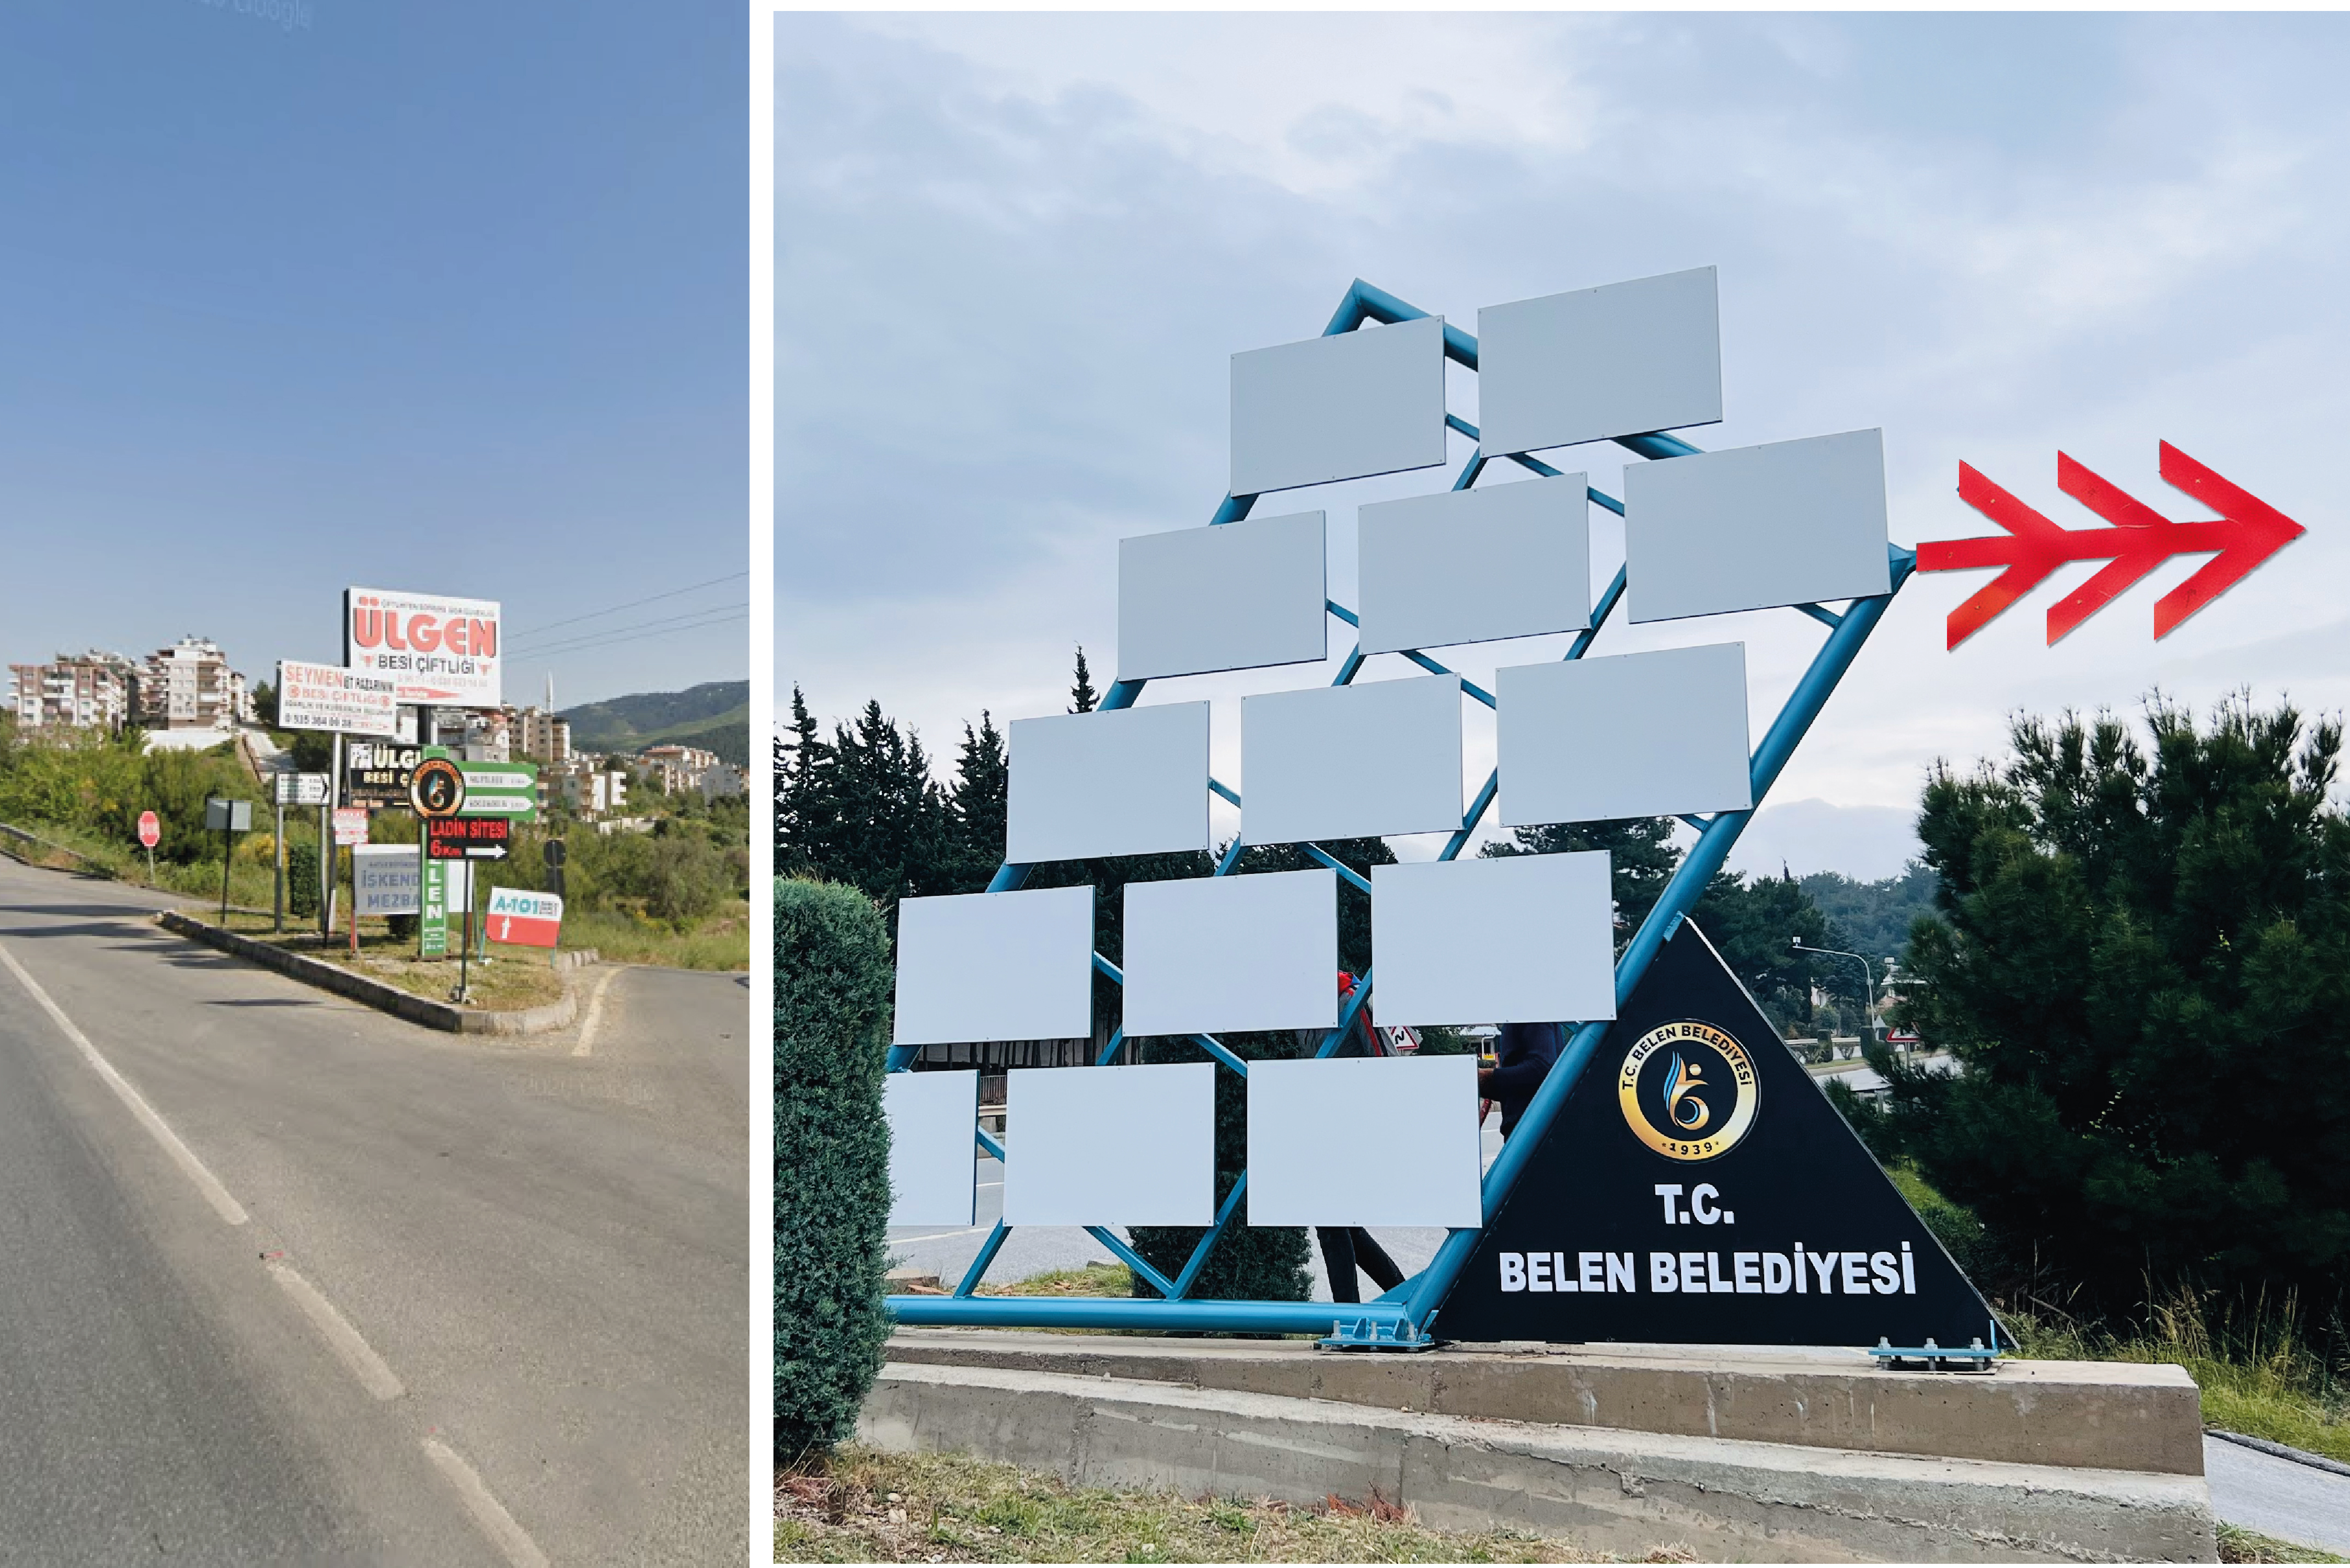 Belen Belediye Başkanı İbrahim Gül'ün öncülüğünde ilçede görüntü kirliliğinin önüne geçmek amacıyla tek tip reklam tabelası uygulaması başlatıldı. 